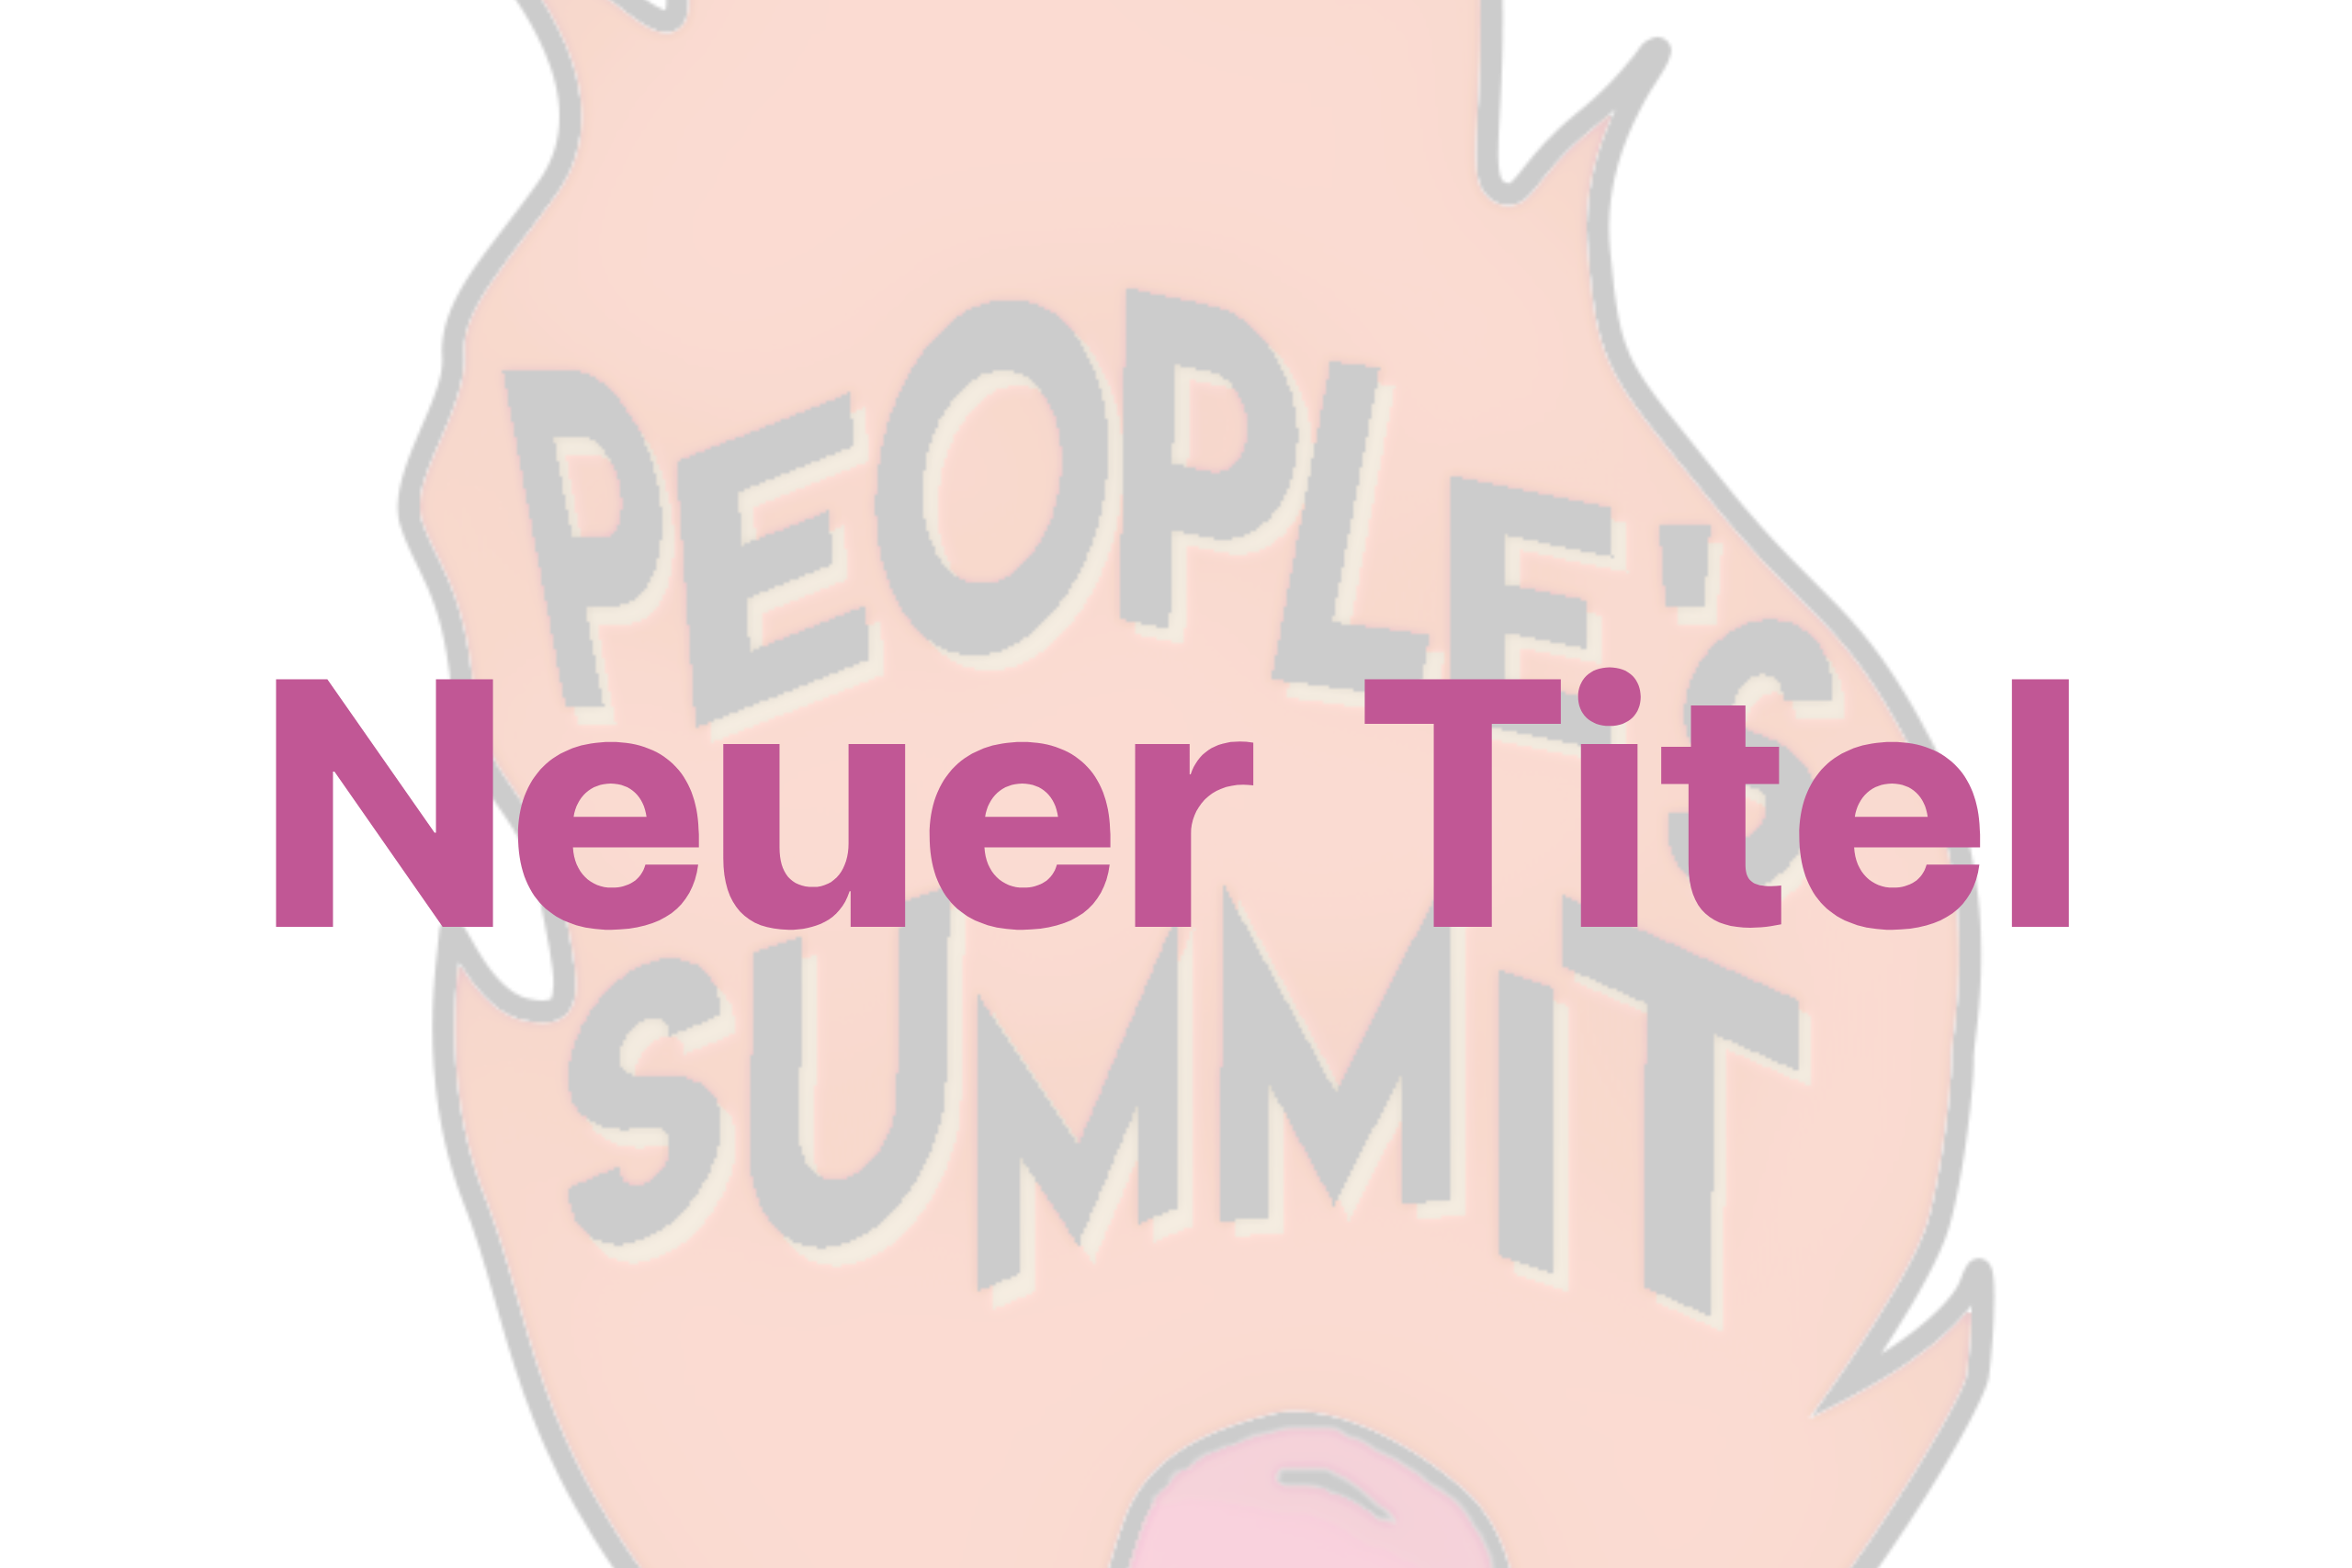 Im Vordergrund steht der Text "Neuer Titel", im Hintergrund sieht man einen Teil des Logos des People's Summit. Das Logo ist eine Grafik von einem brennenden Streichholz, in der Flamme steht in geschwungener Schrift "People's Summit". Der Hintergrund ist stark transparent.